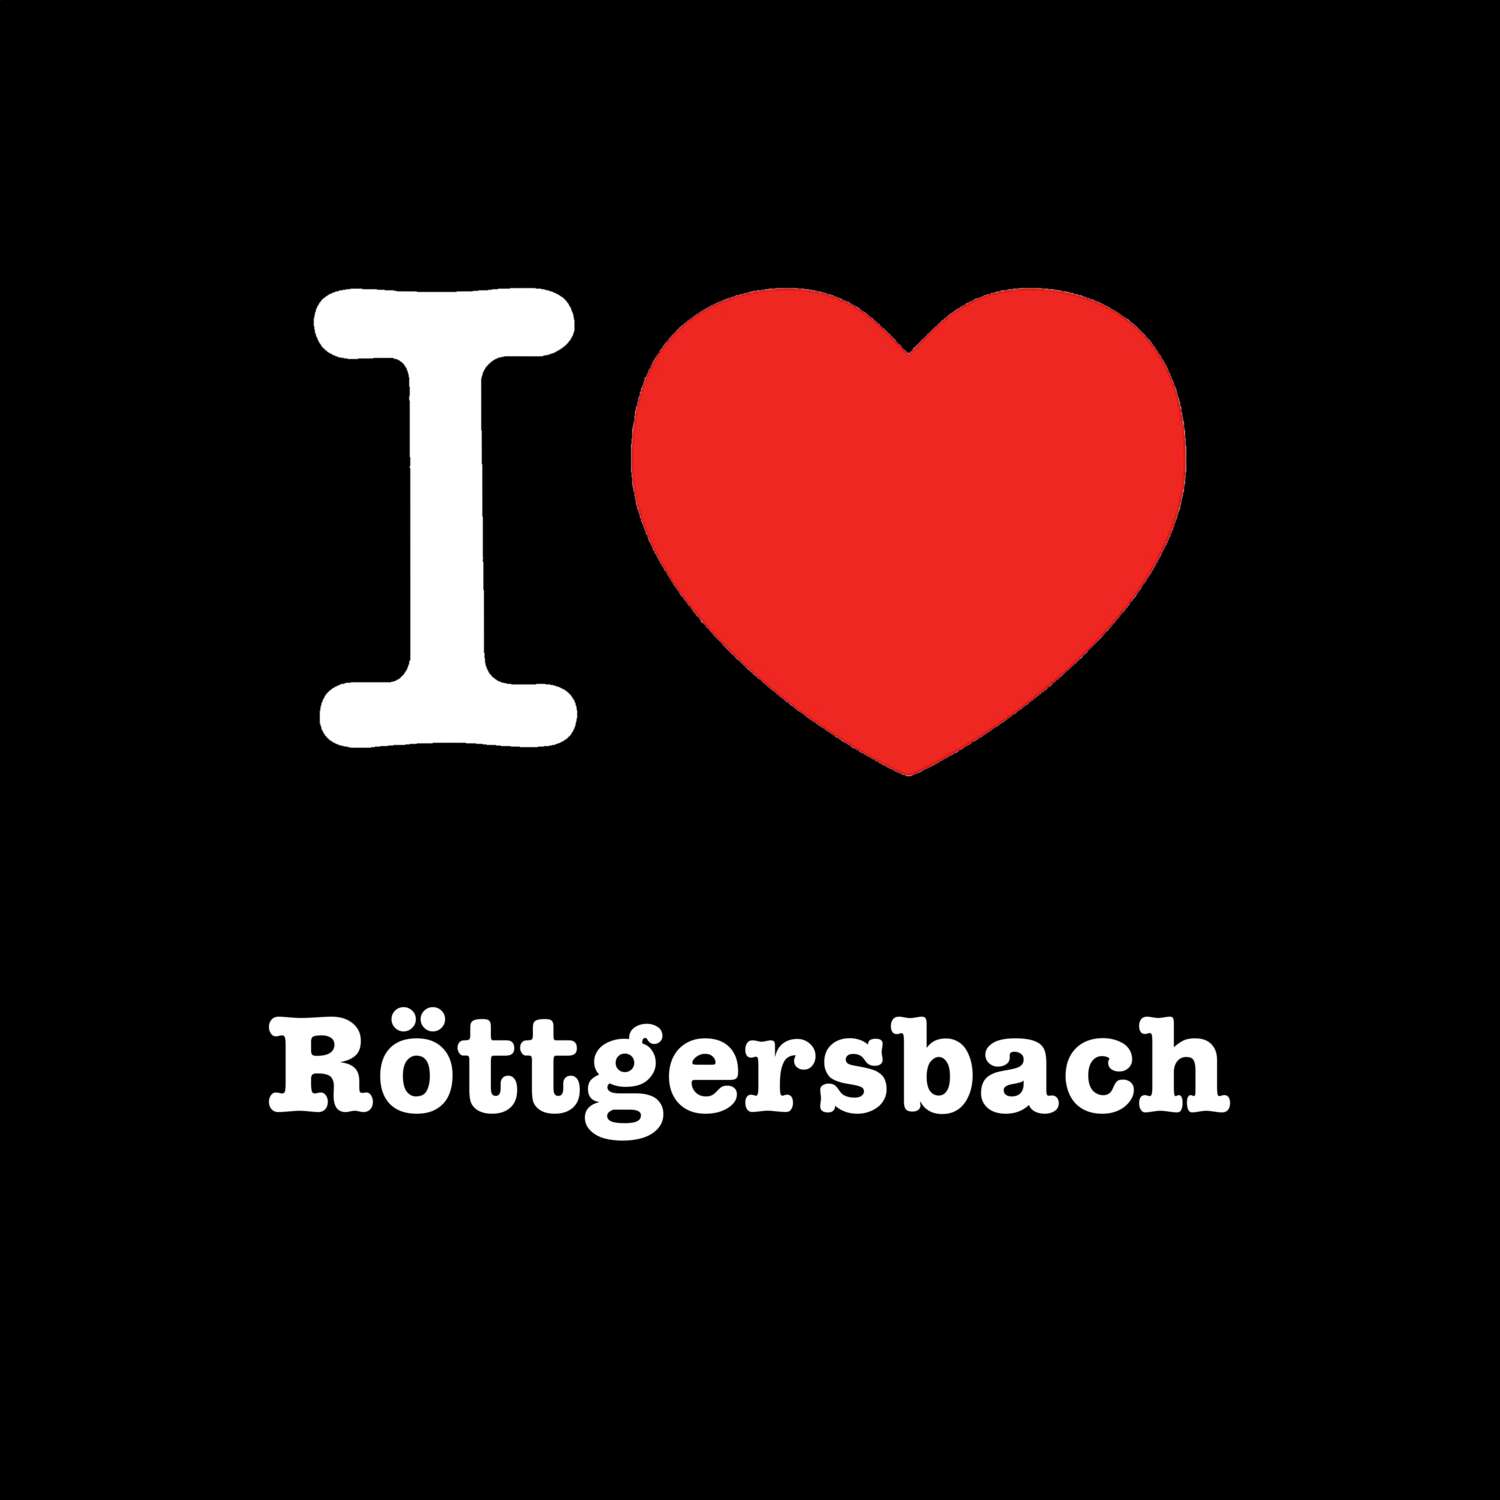 Röttgersbach T-Shirt »I love«